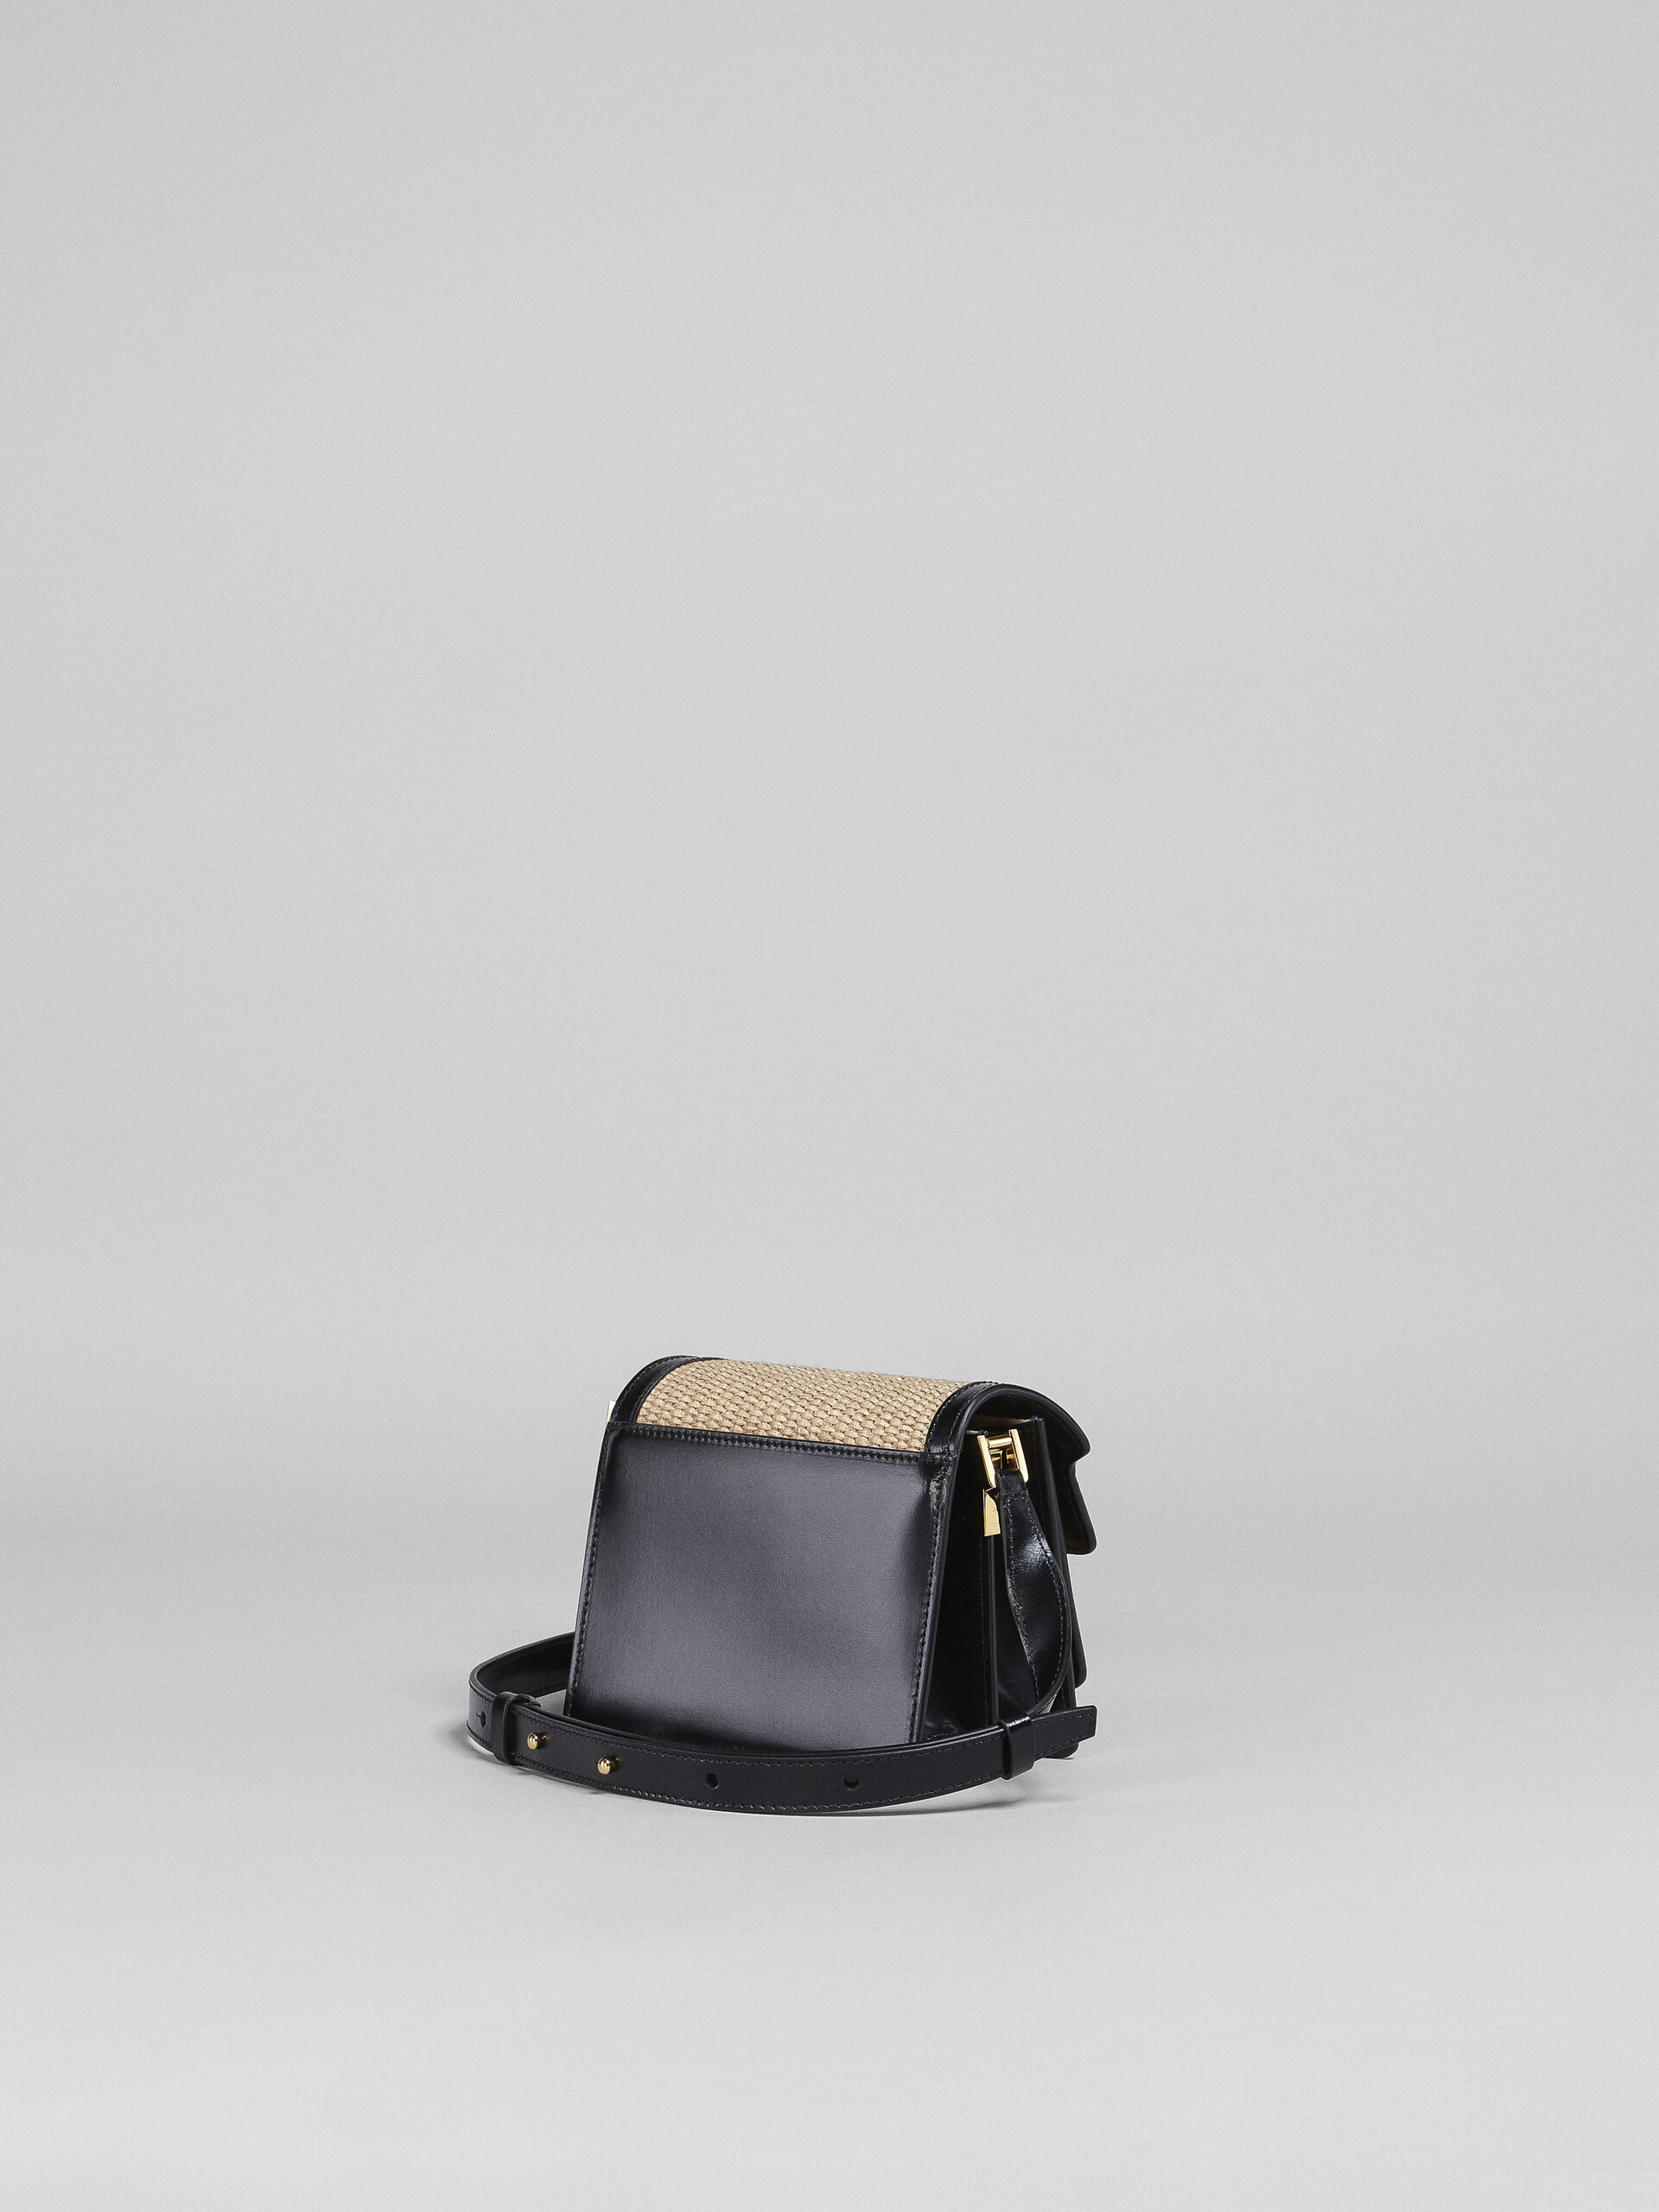 TRUNK SOFT bag mini in pelle nera e rafia - Borse a spalla - Image 3